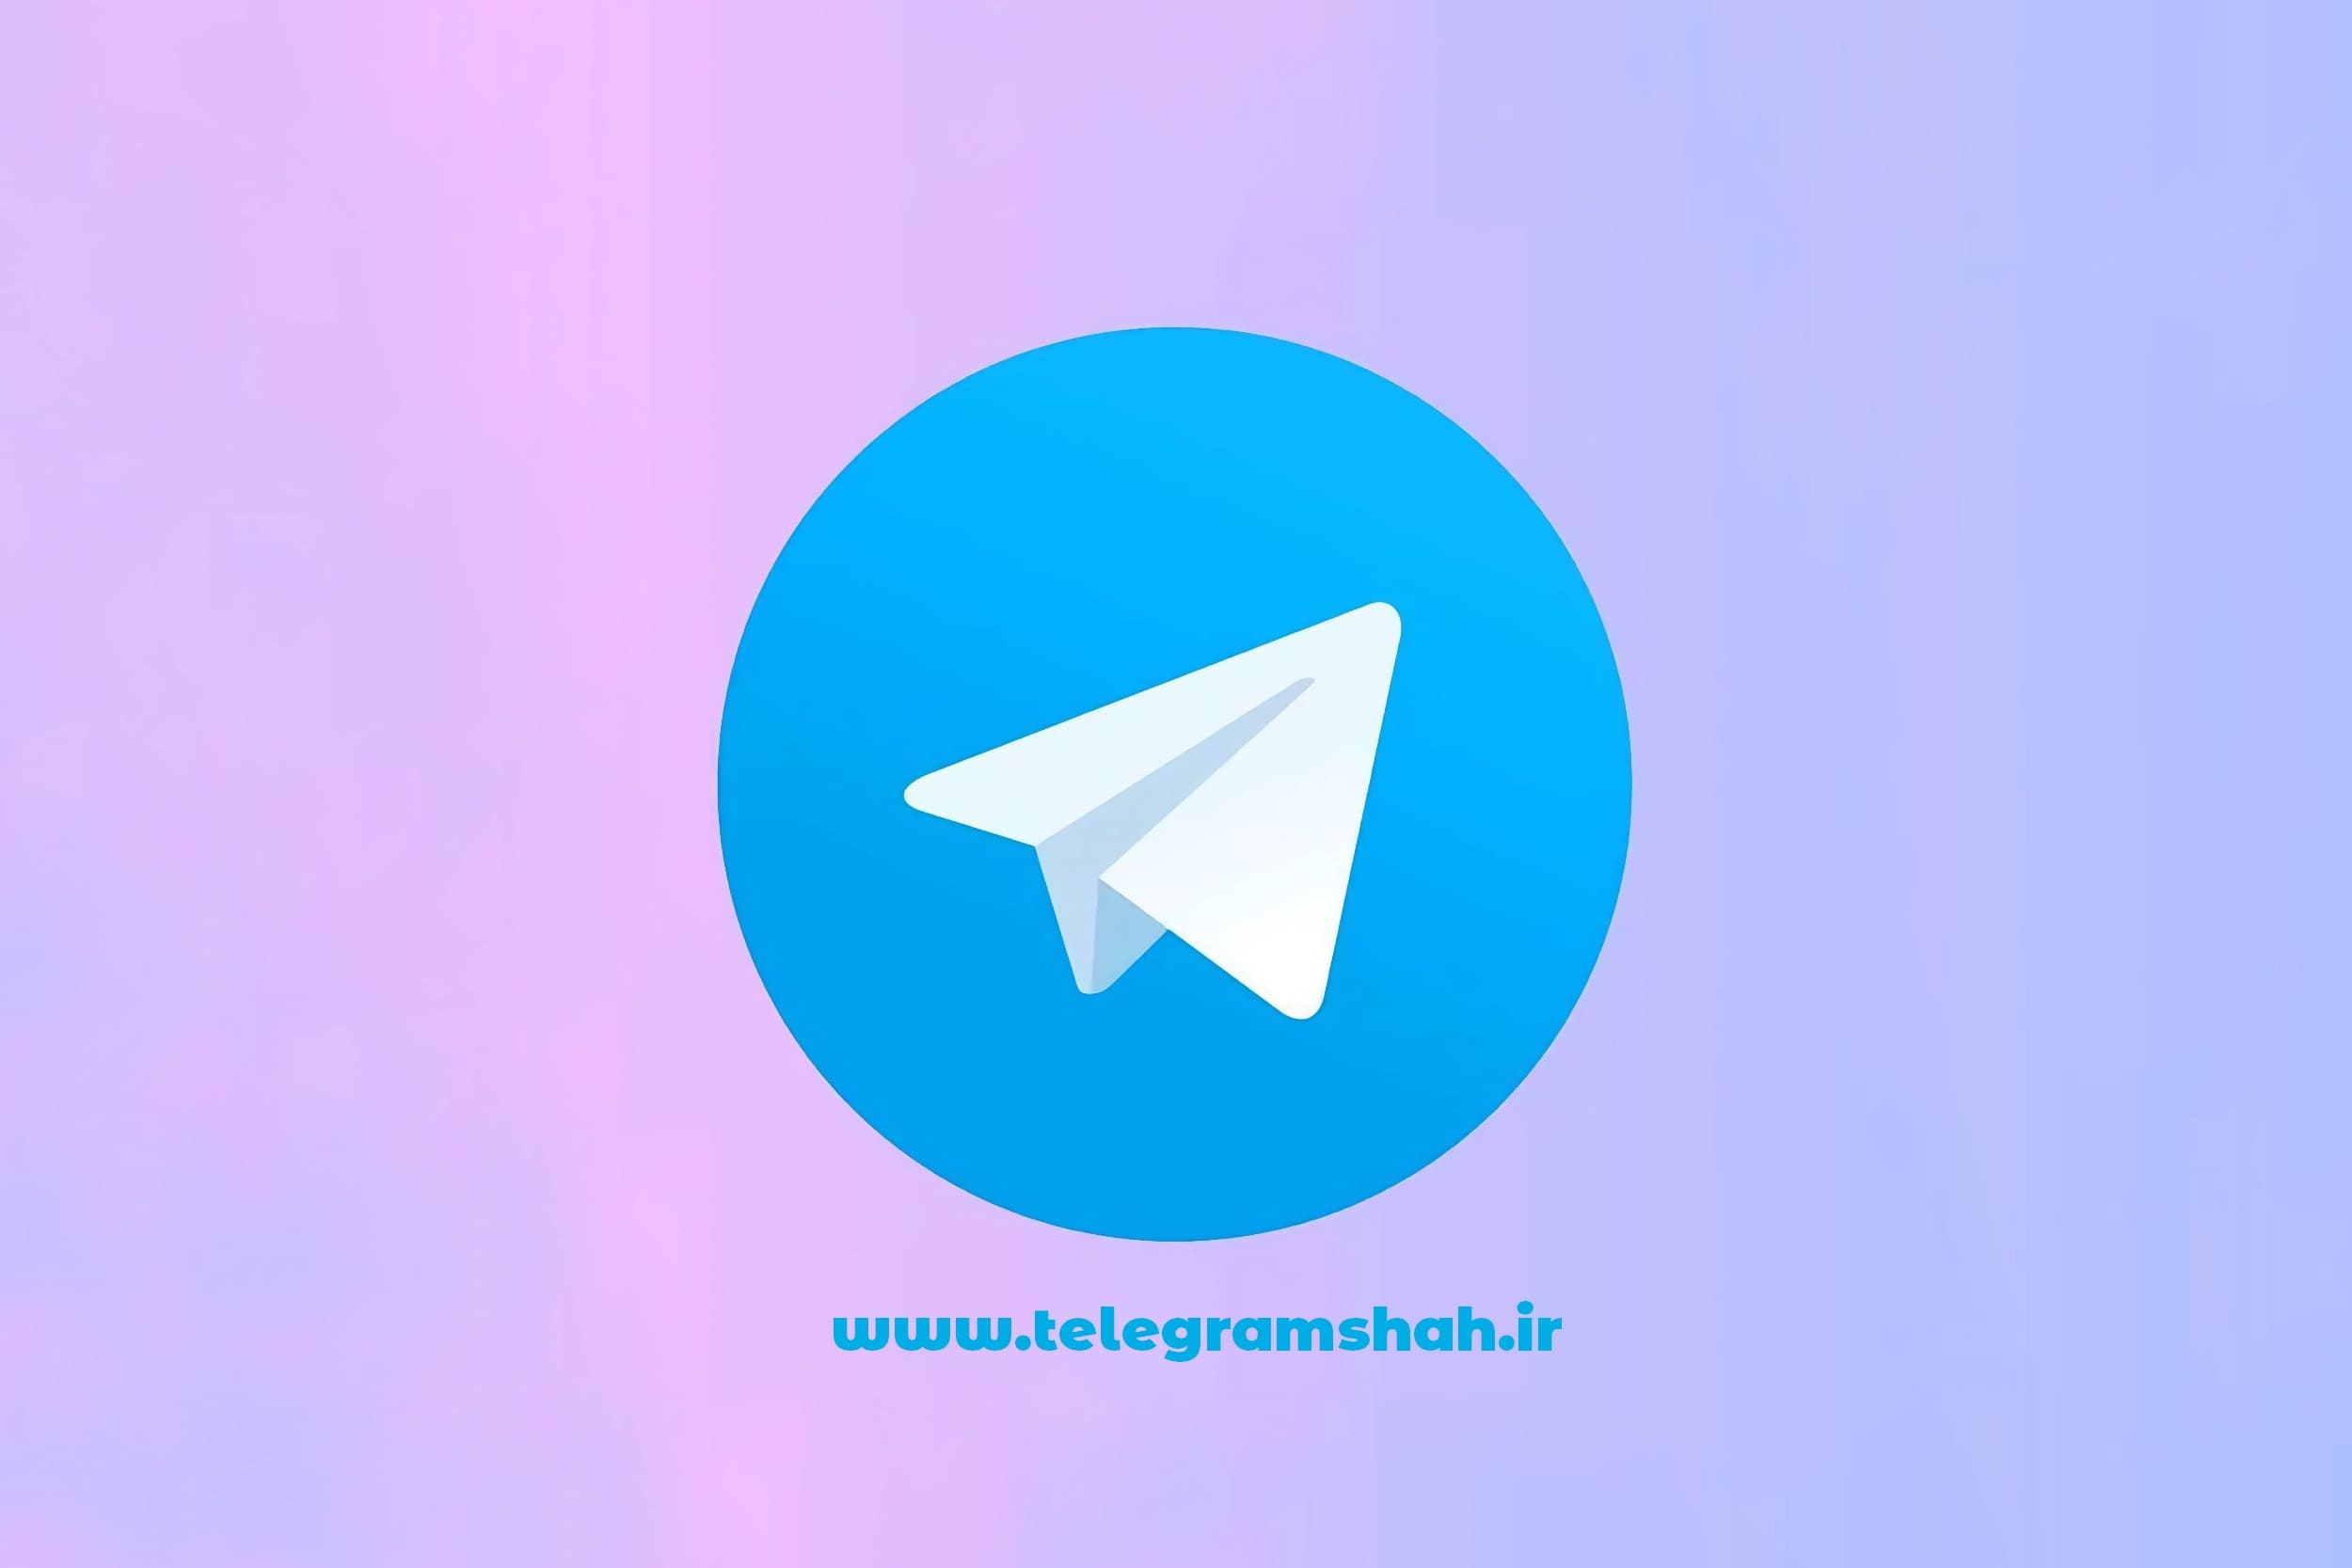 مدیریت چت در تلگرام